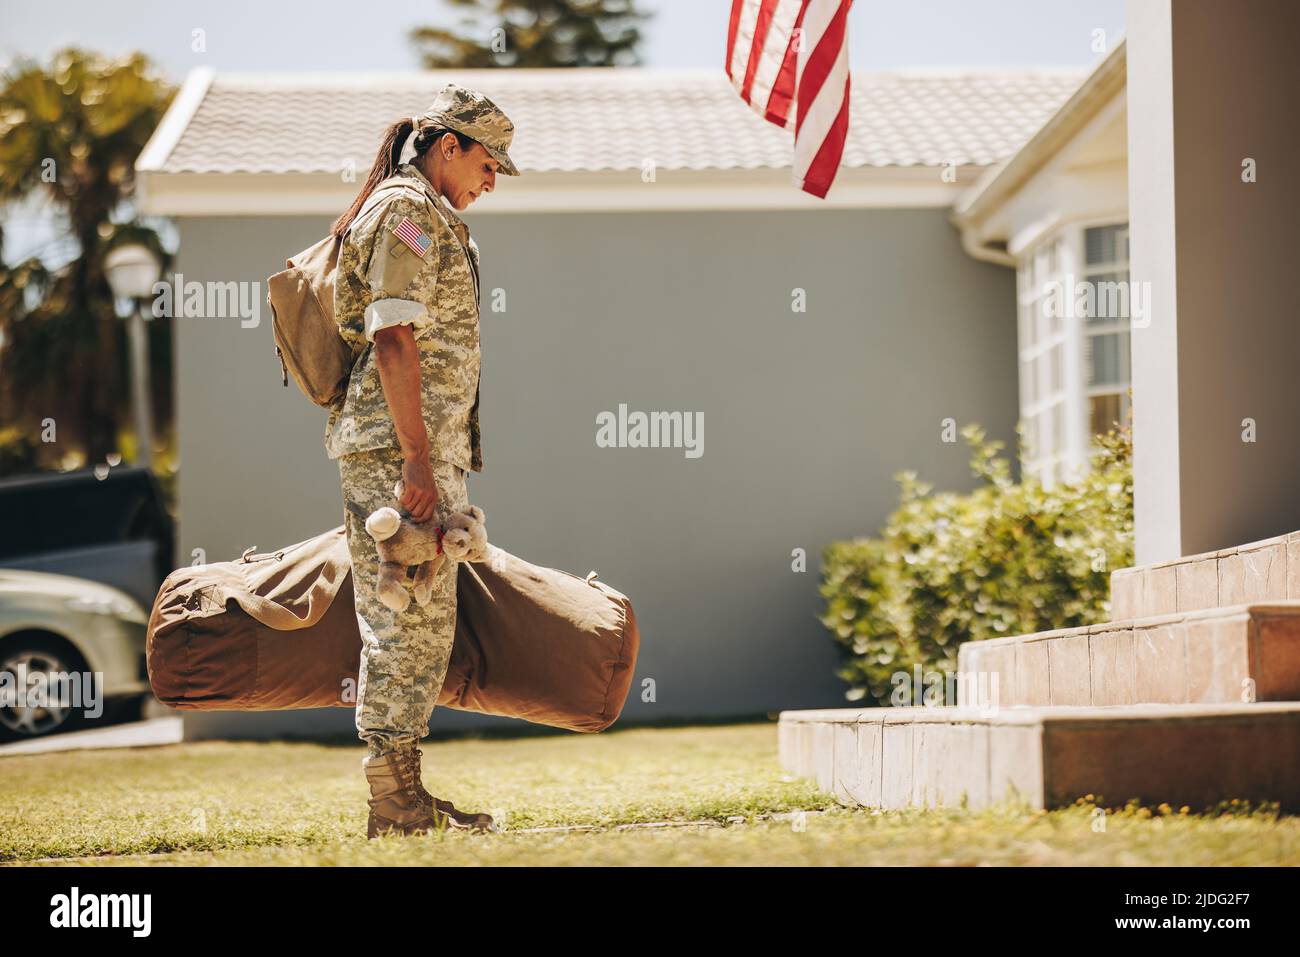 Patriotische Militärmutter, die einen Teddybär in der Hand hält, während sie mit ihrem Gepäck vor ihrem Haus steht. Amerikanische Soldatin, die nach dem Dienst h nach Hause zurückkehrt Stockfoto